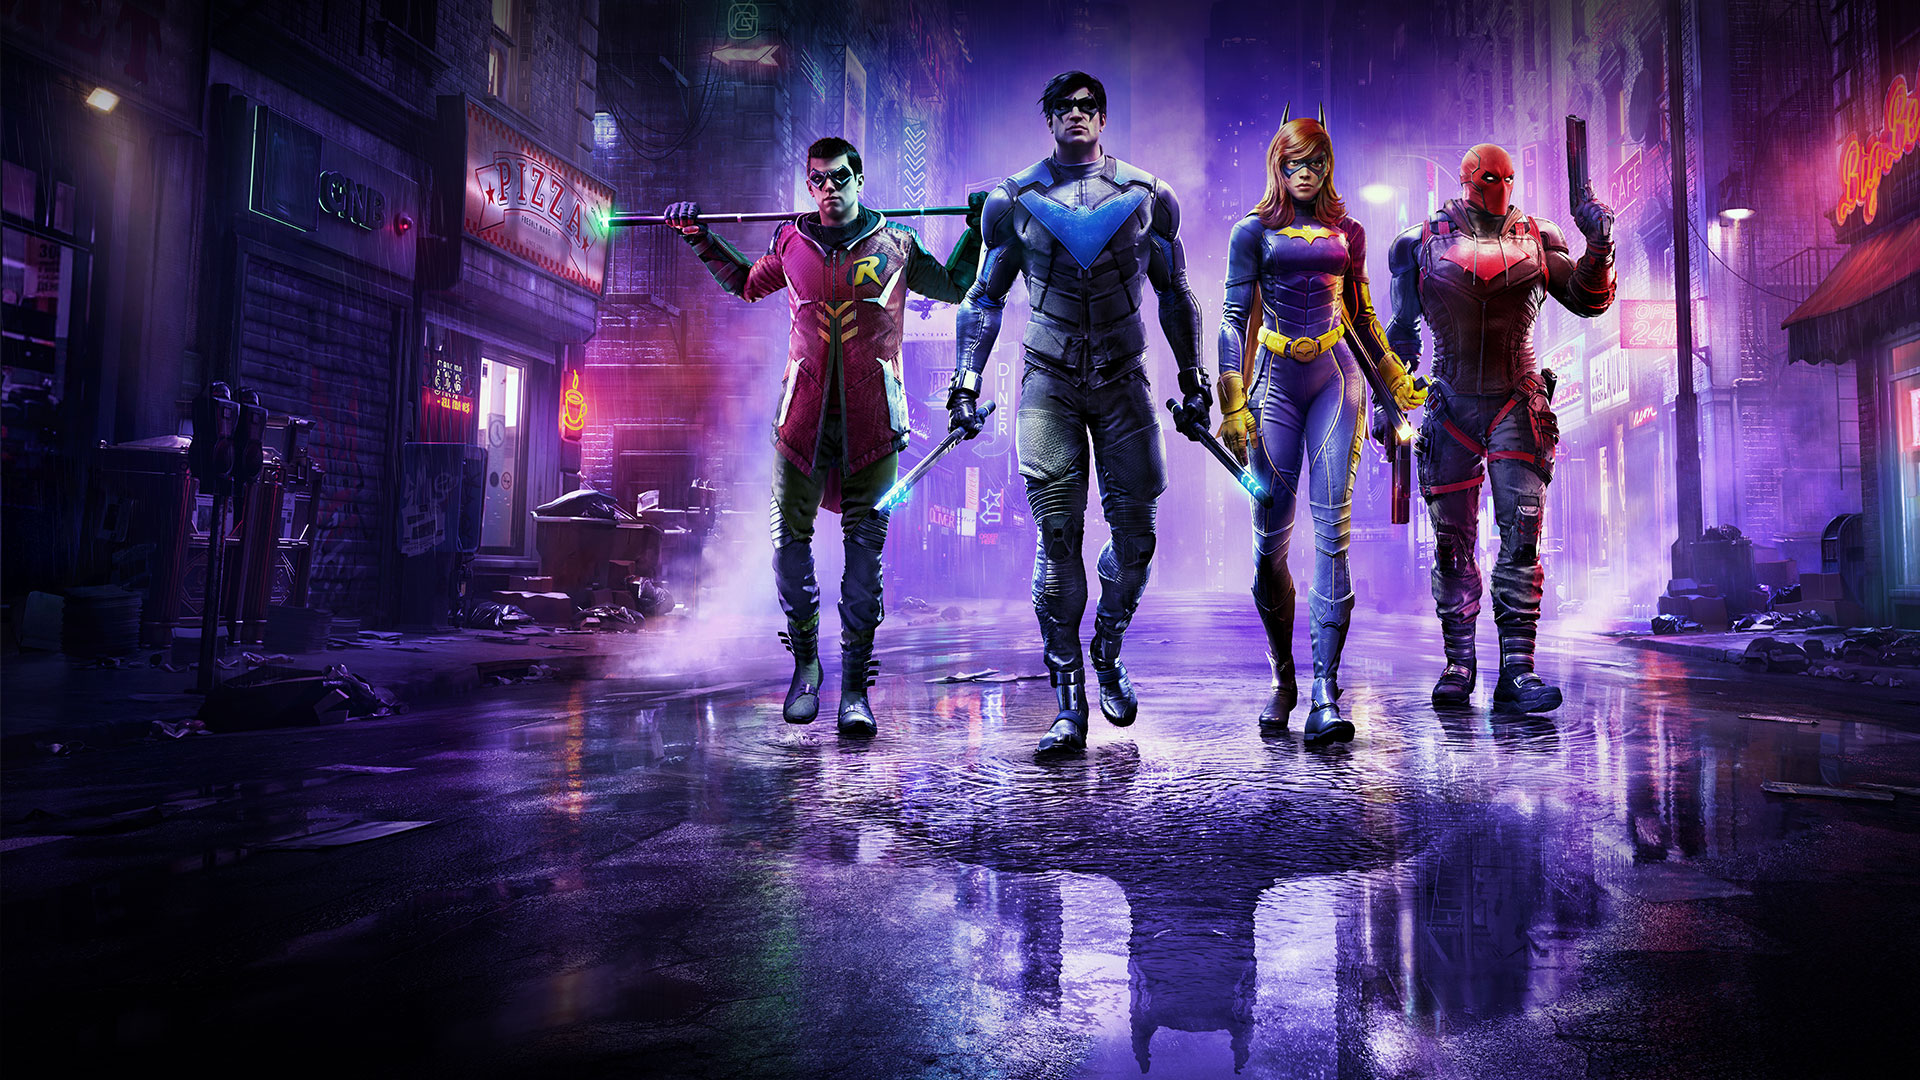 Robin, Nightwing, Batgirl et Red Hood marchent dans les rues pluvieuses avec le reflet de Batman dans une flaque d’eau.